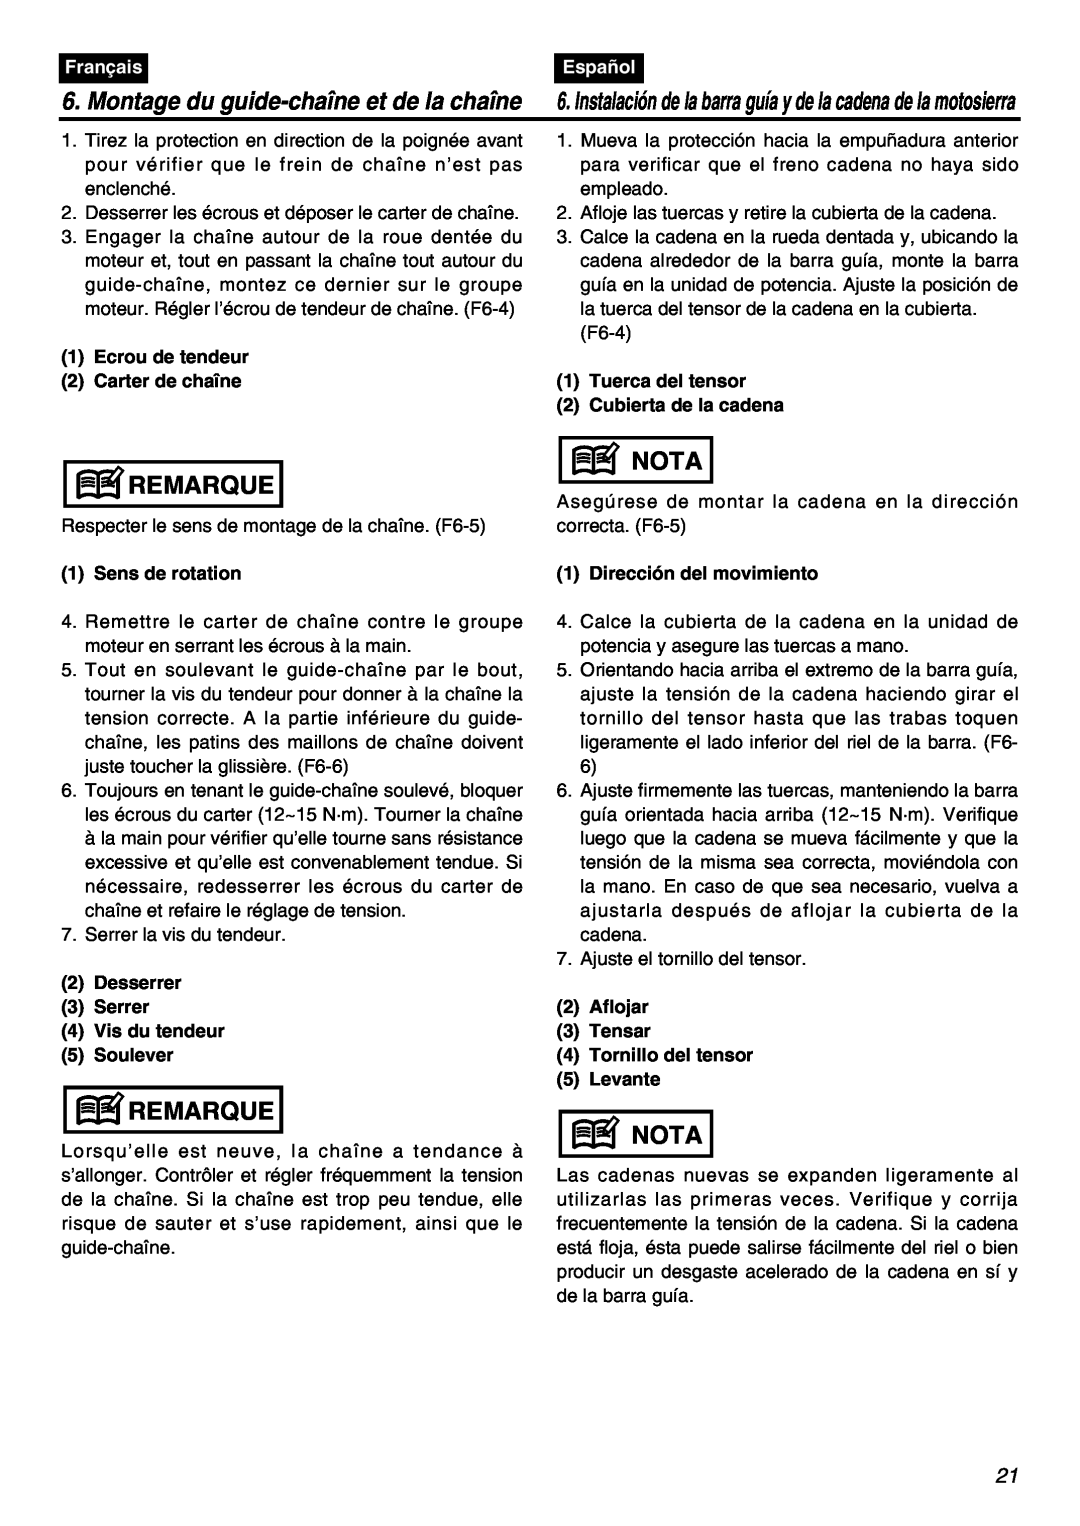 RedMax GZ400 manual Remarque, Nota, Montage du guide-chaîne et de la chaîne, Français, Español 